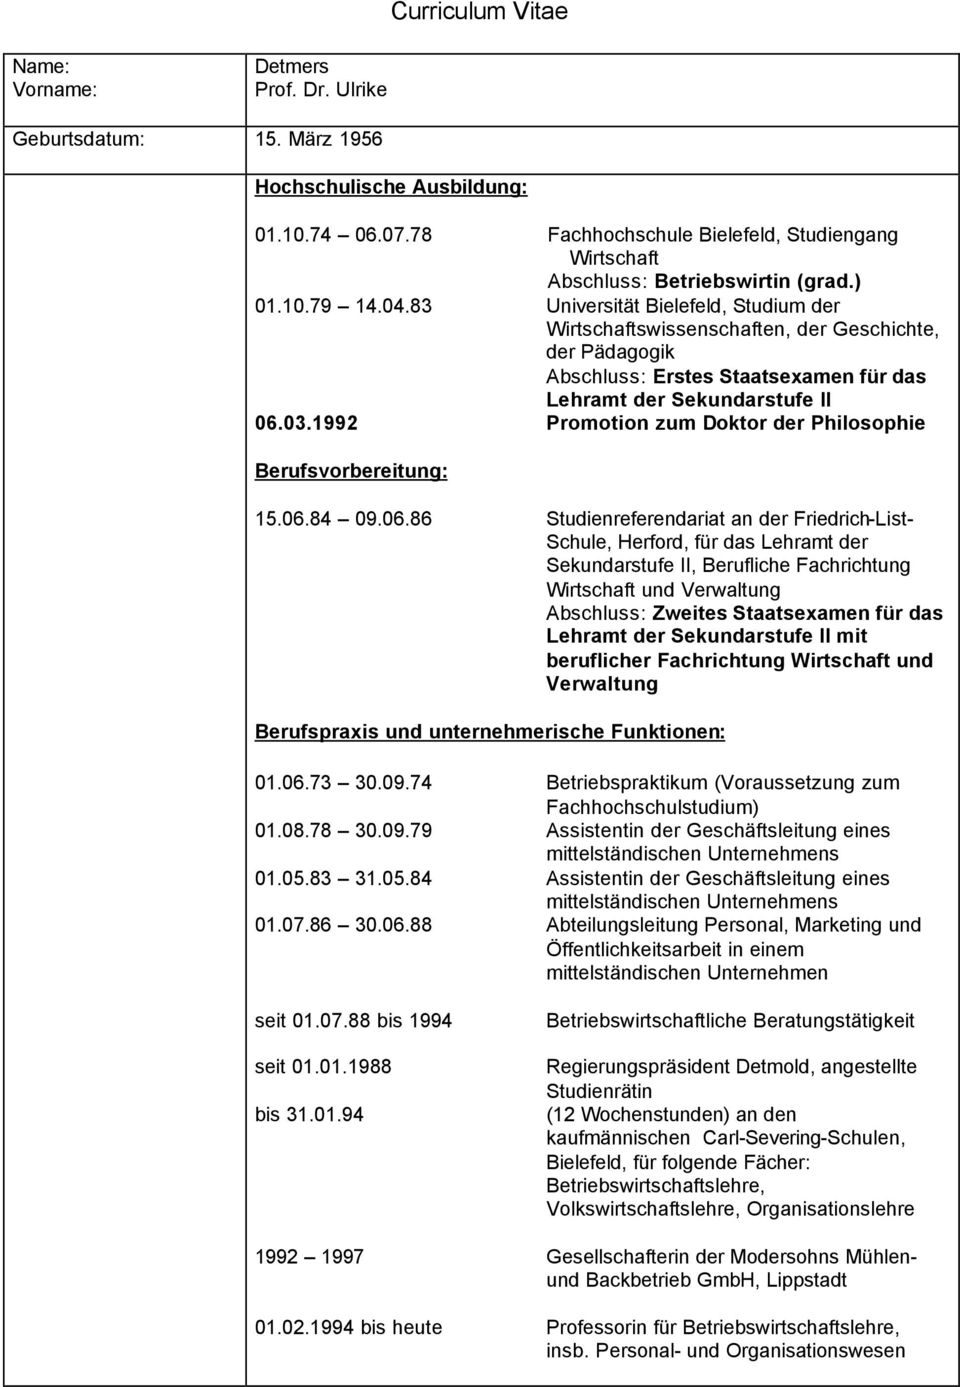 83 Universität Bielefeld, Studium der Wirtschaftswissenschaften, der Geschichte, der Pädagogik Abschluss: Erstes Staatsexamen für das Lehramt der Sekundarstufe II 06.03.